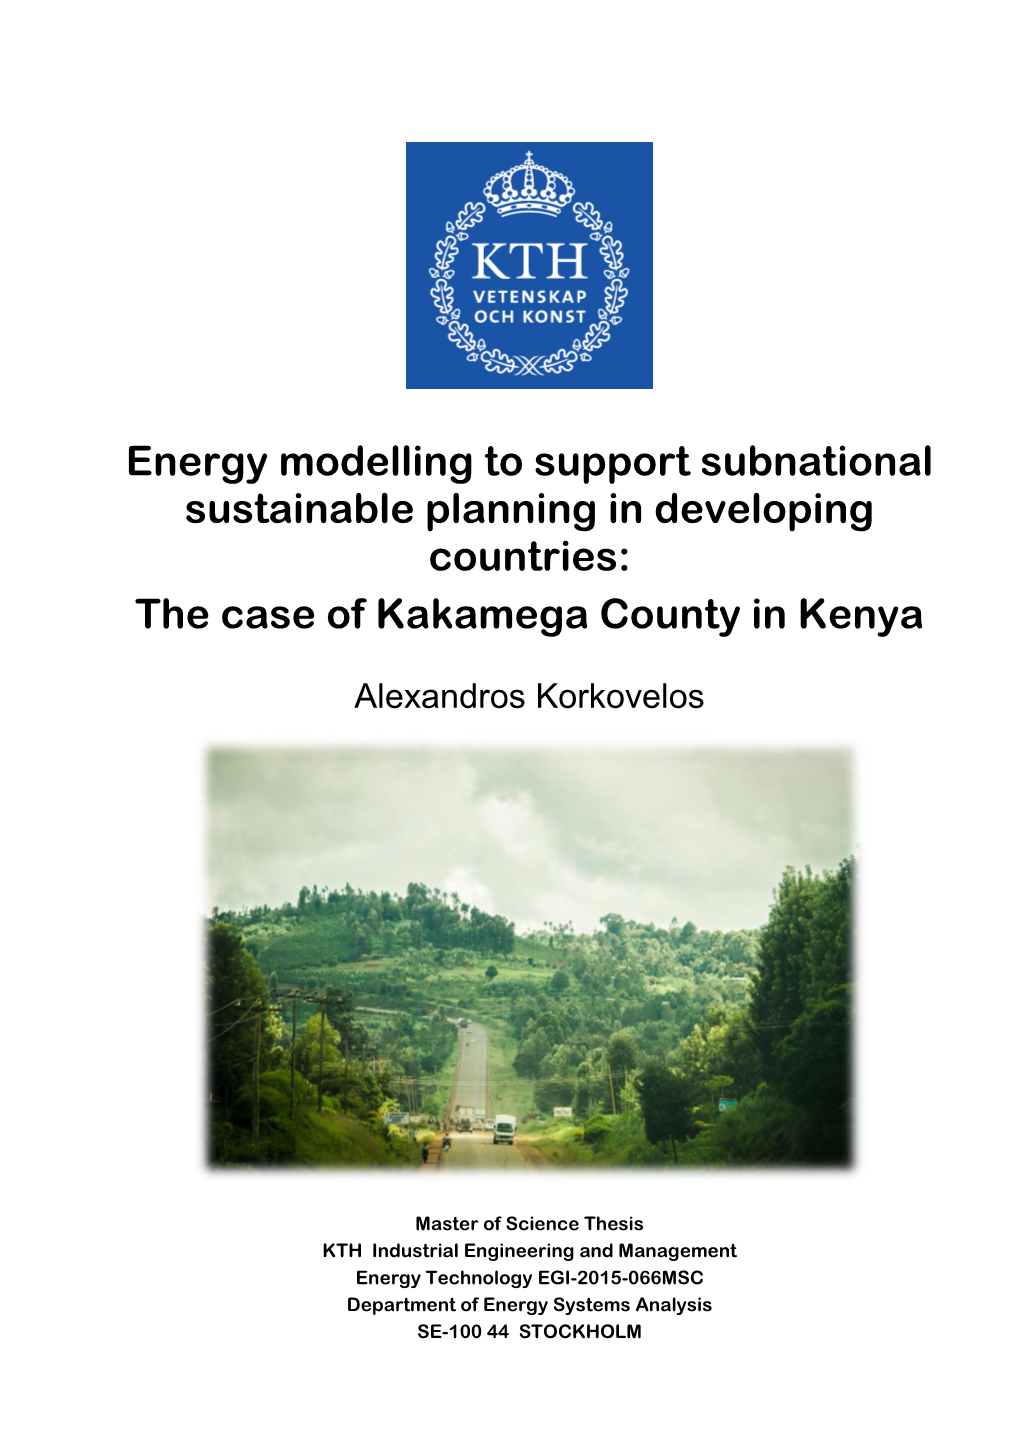 Energy Modelling for Kakamega County in Western Kenya